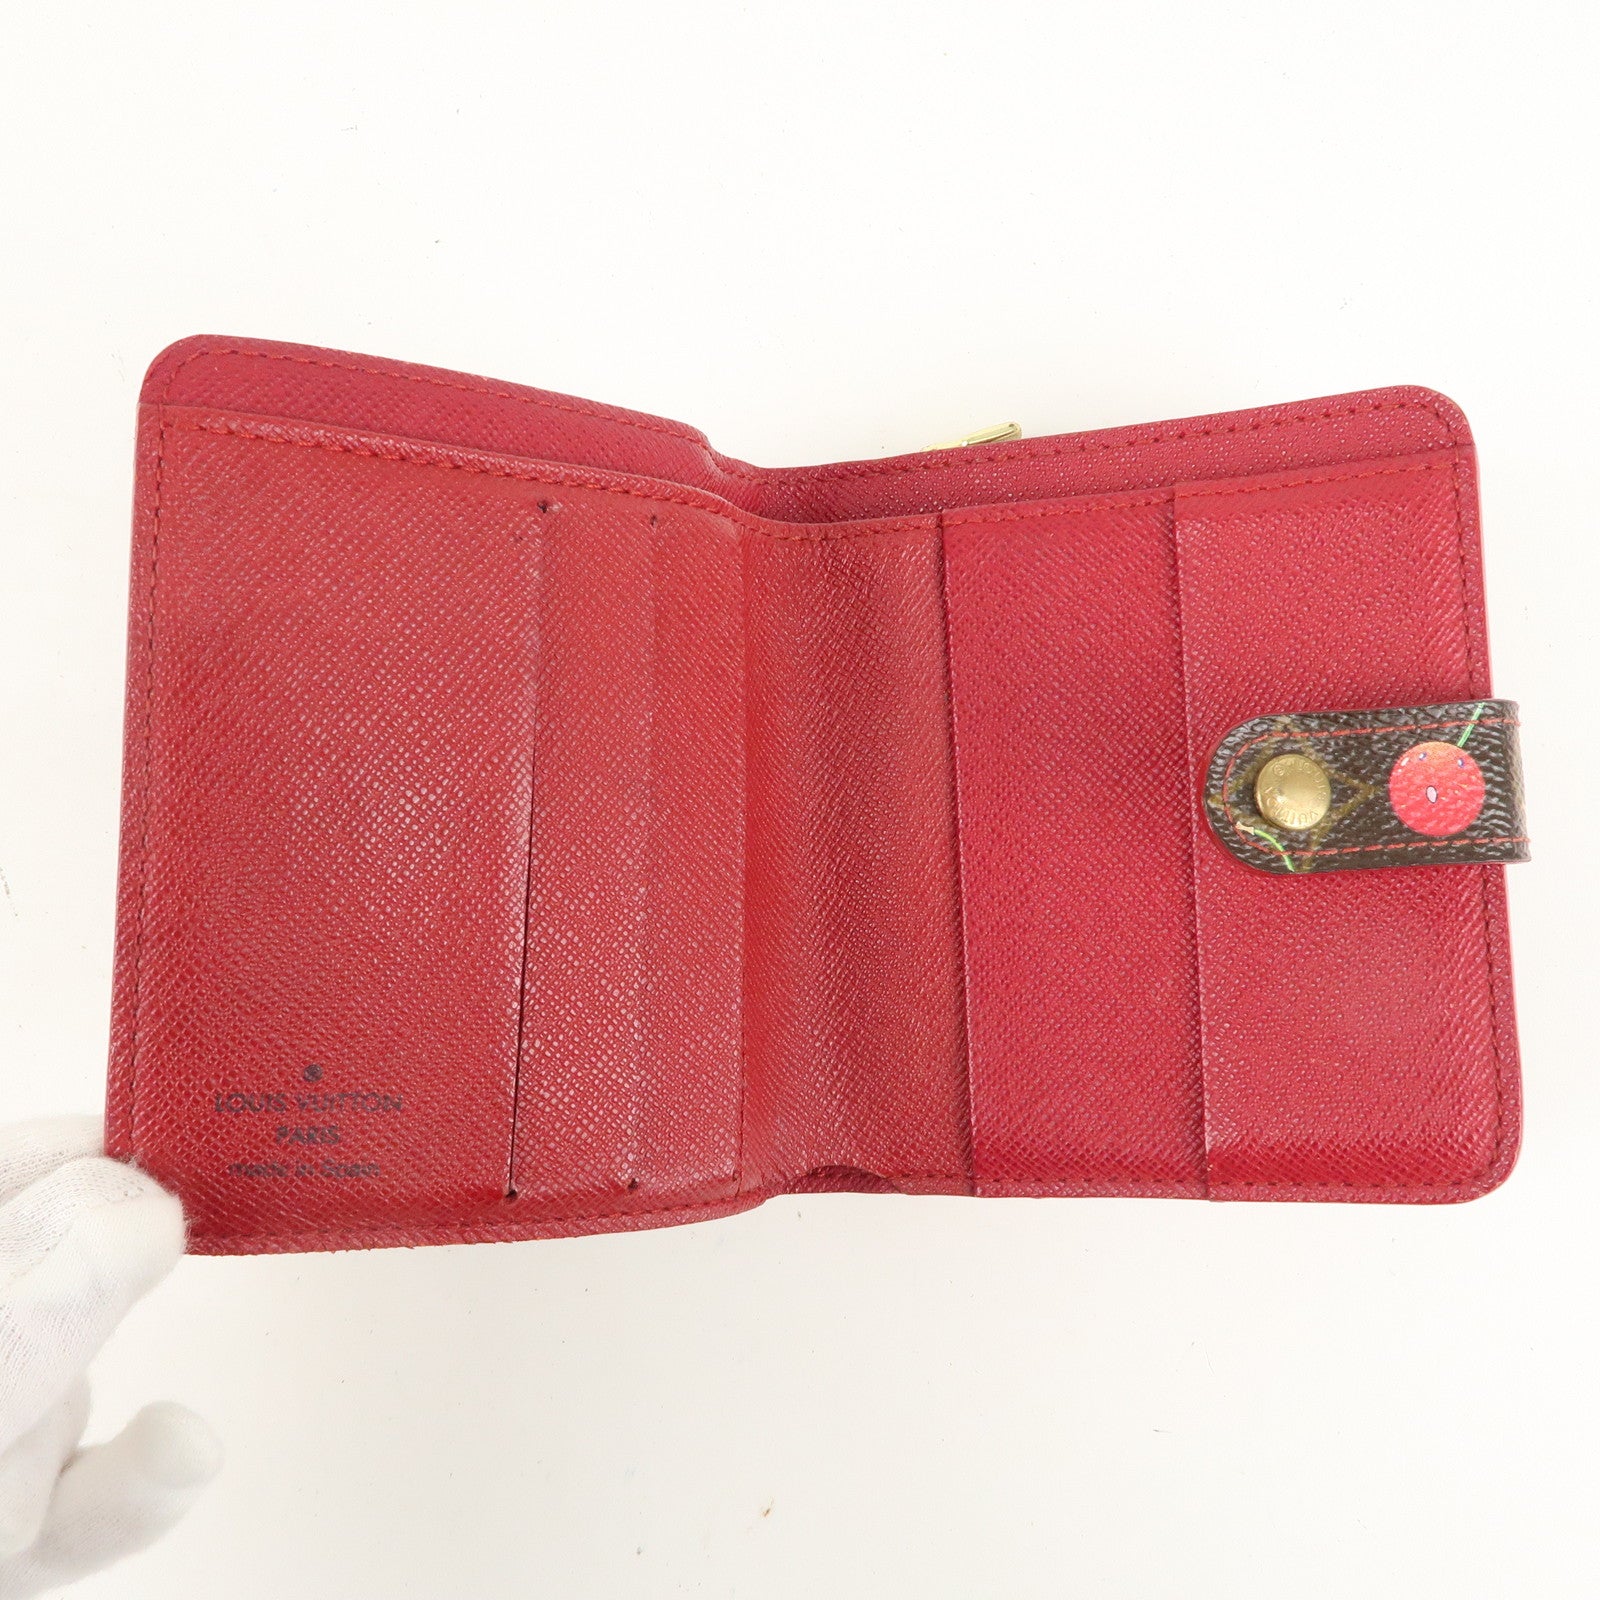 Louis Vuitton, Bags, Louis Vuitton Cherry Fold Mini Wallet 75827l32b